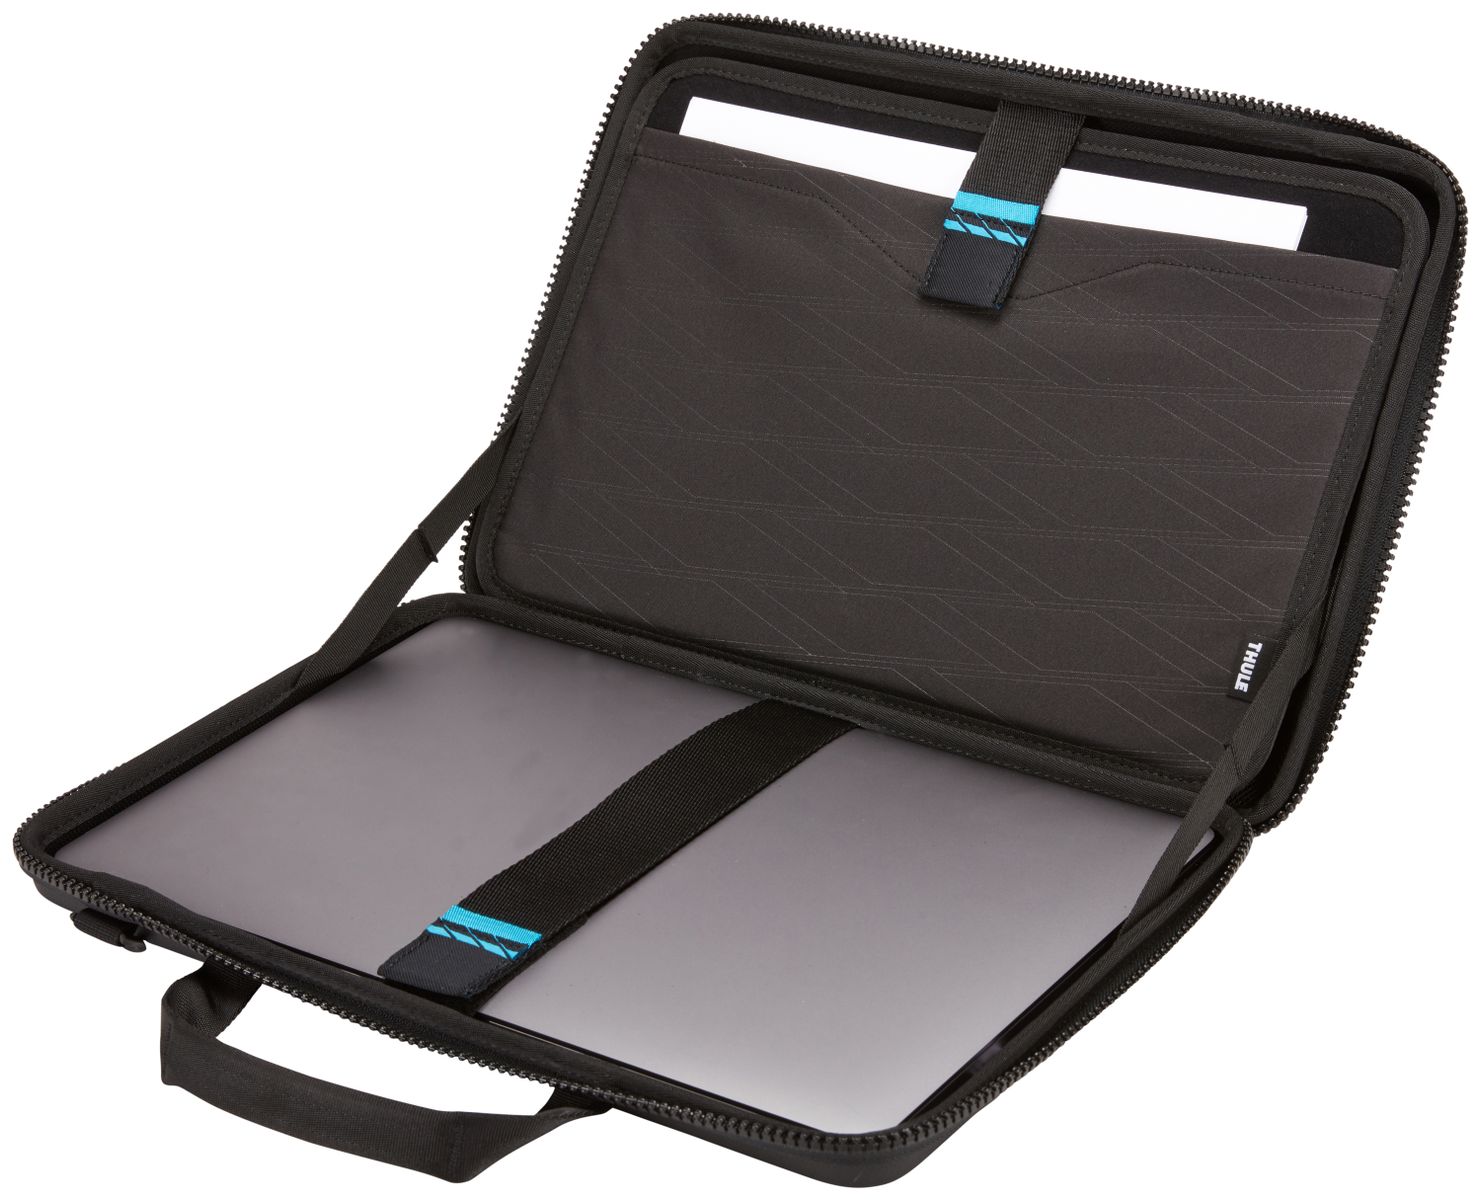 Thule Gauntlet MacBook Pro® Attaché 16 - Black